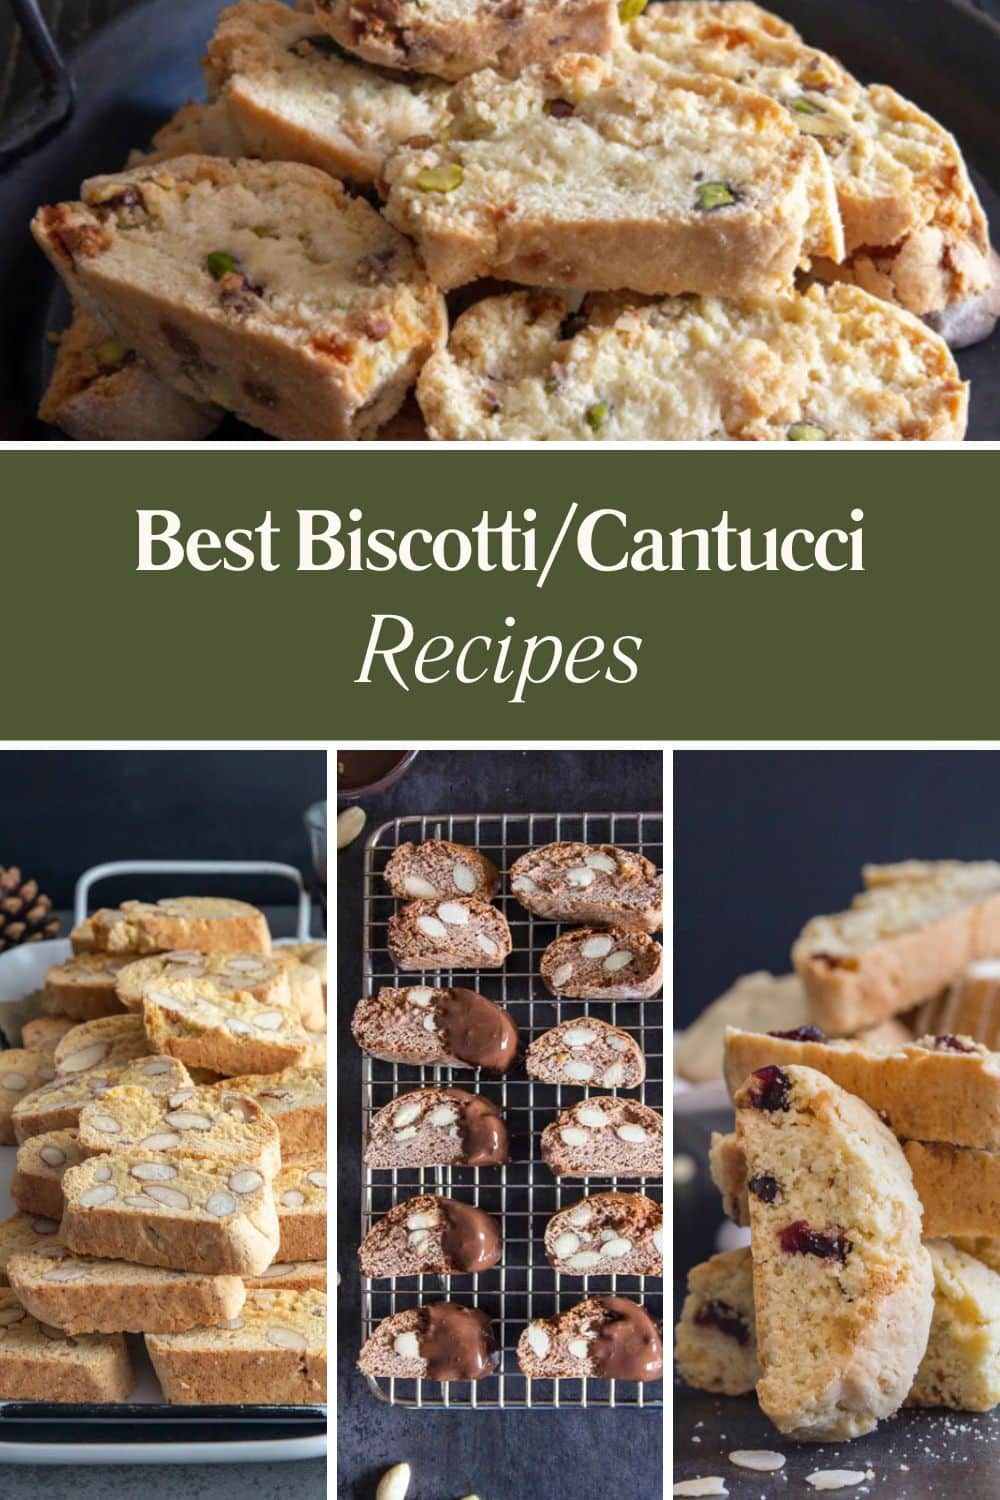 Best Biscotti/Cantucci Recipes